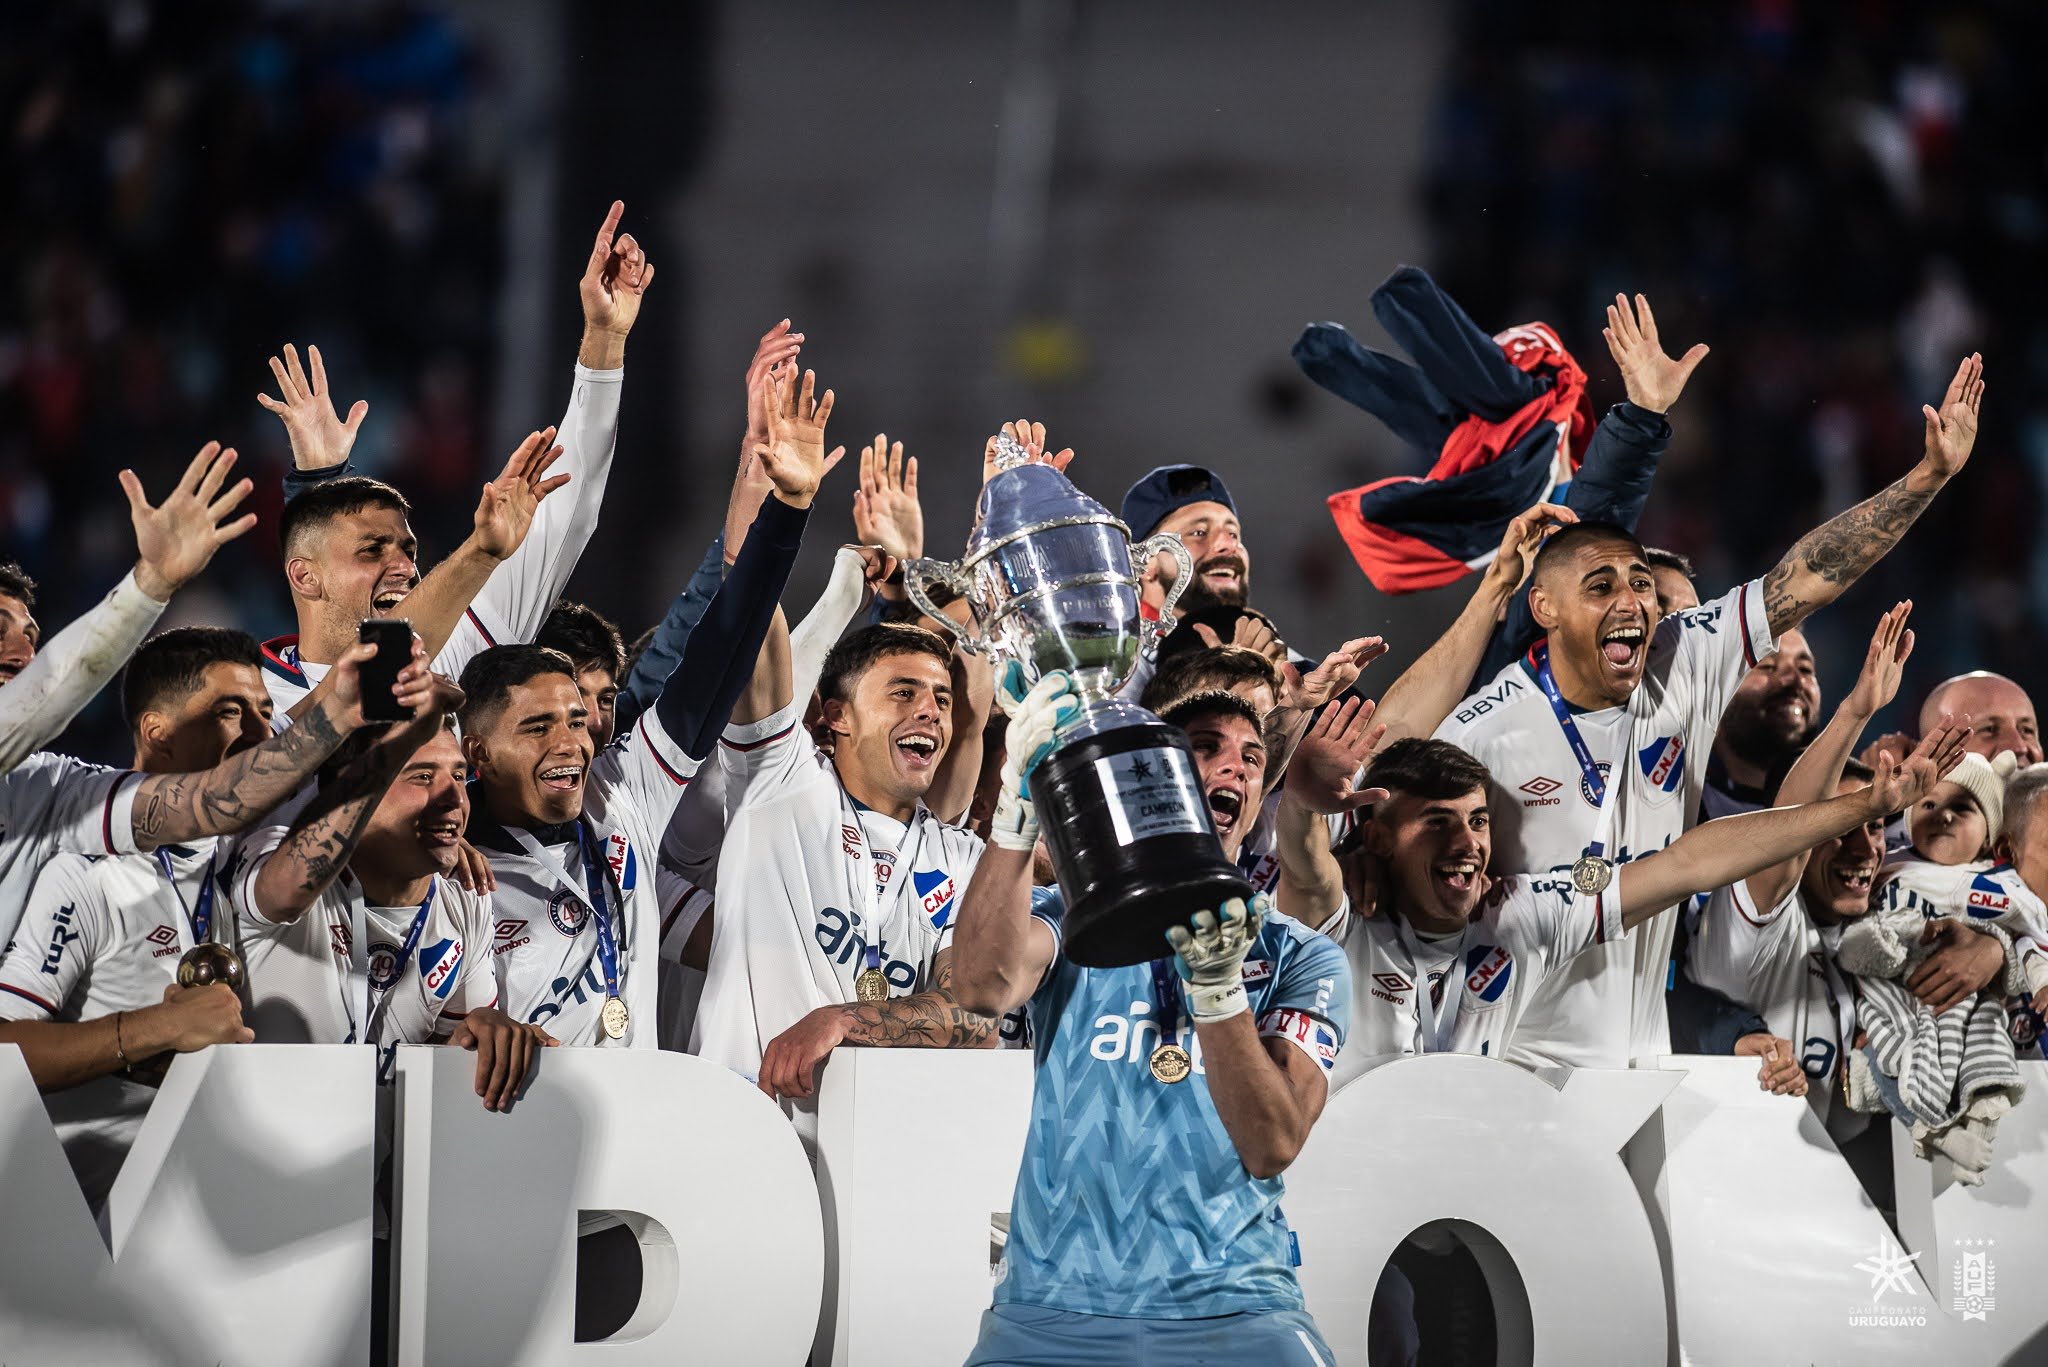 Nacional es el Campeón Uruguayo 2022